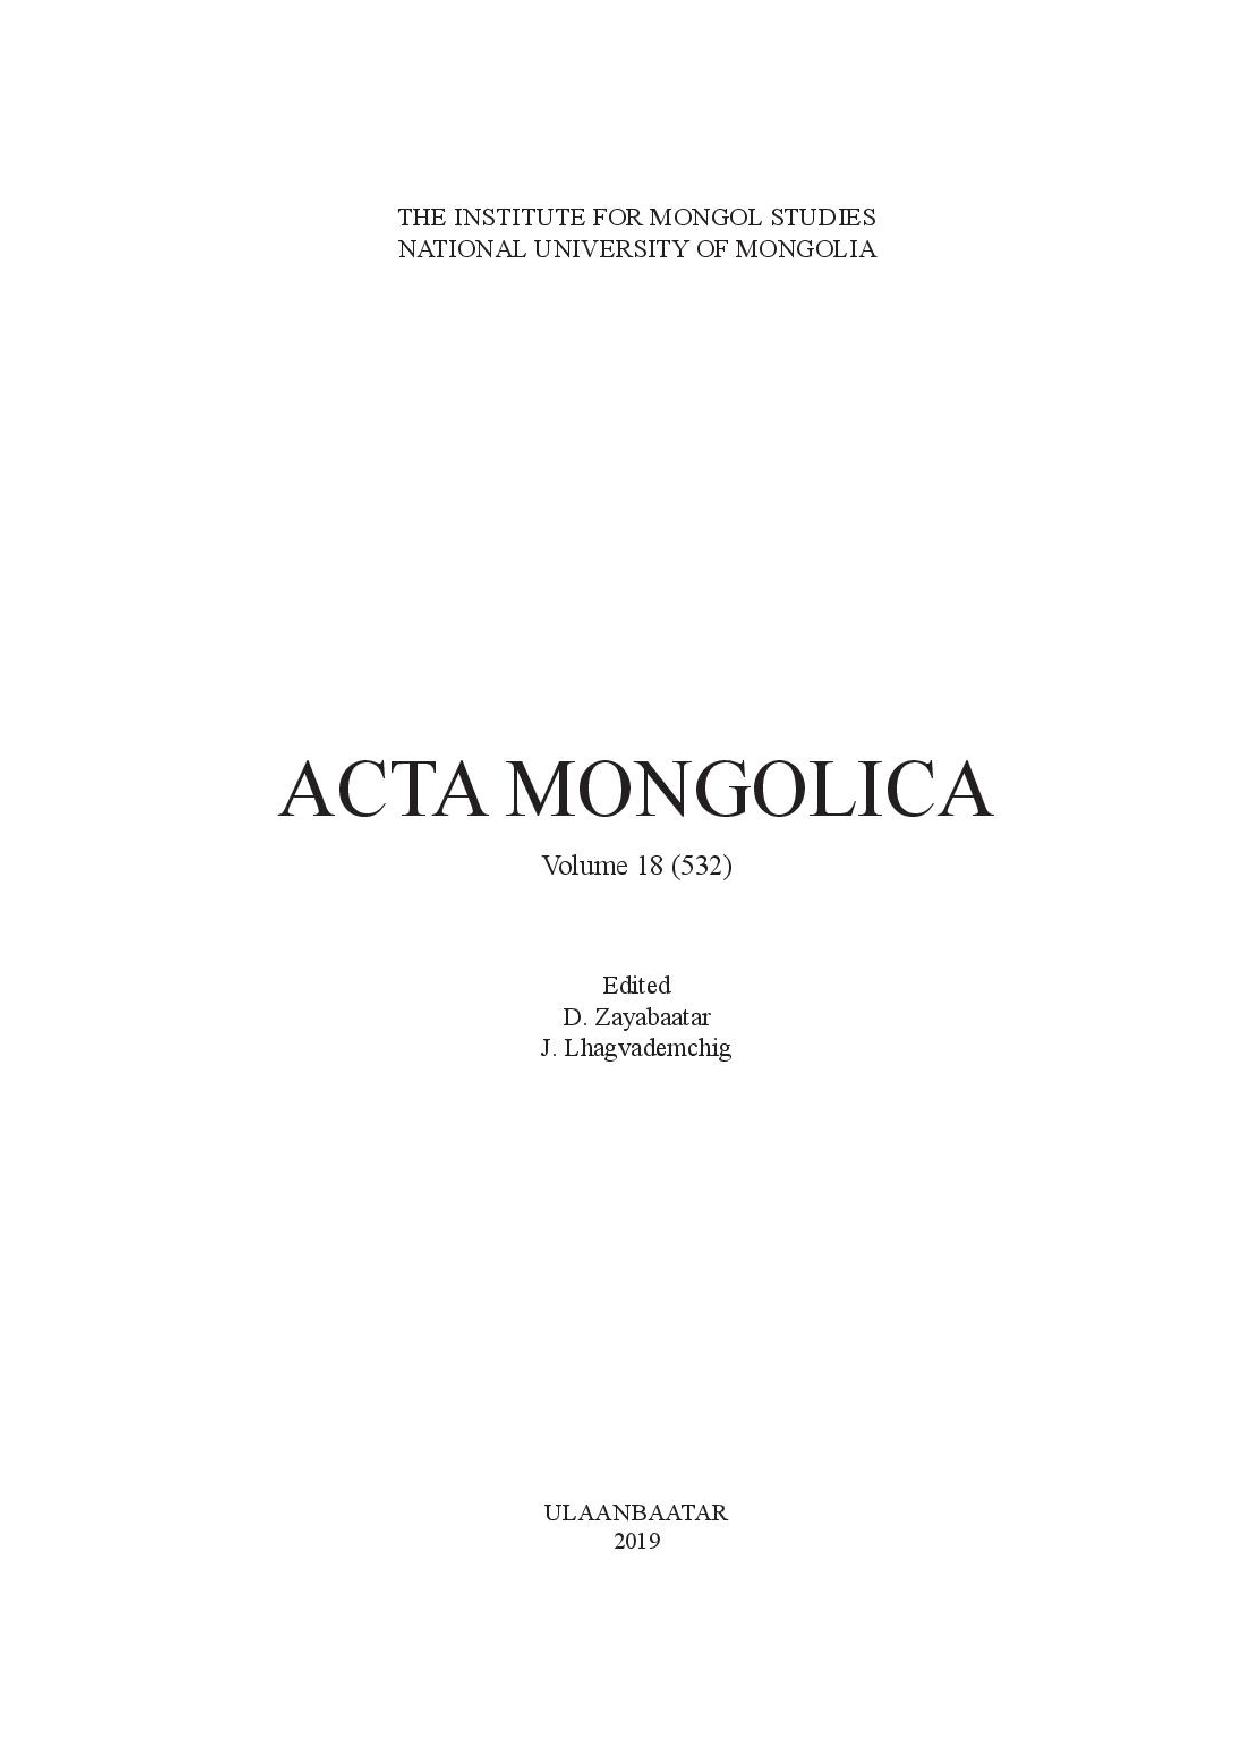 Acta-Mongolica-Vol-18-mongolian sambar-page-001.jpg